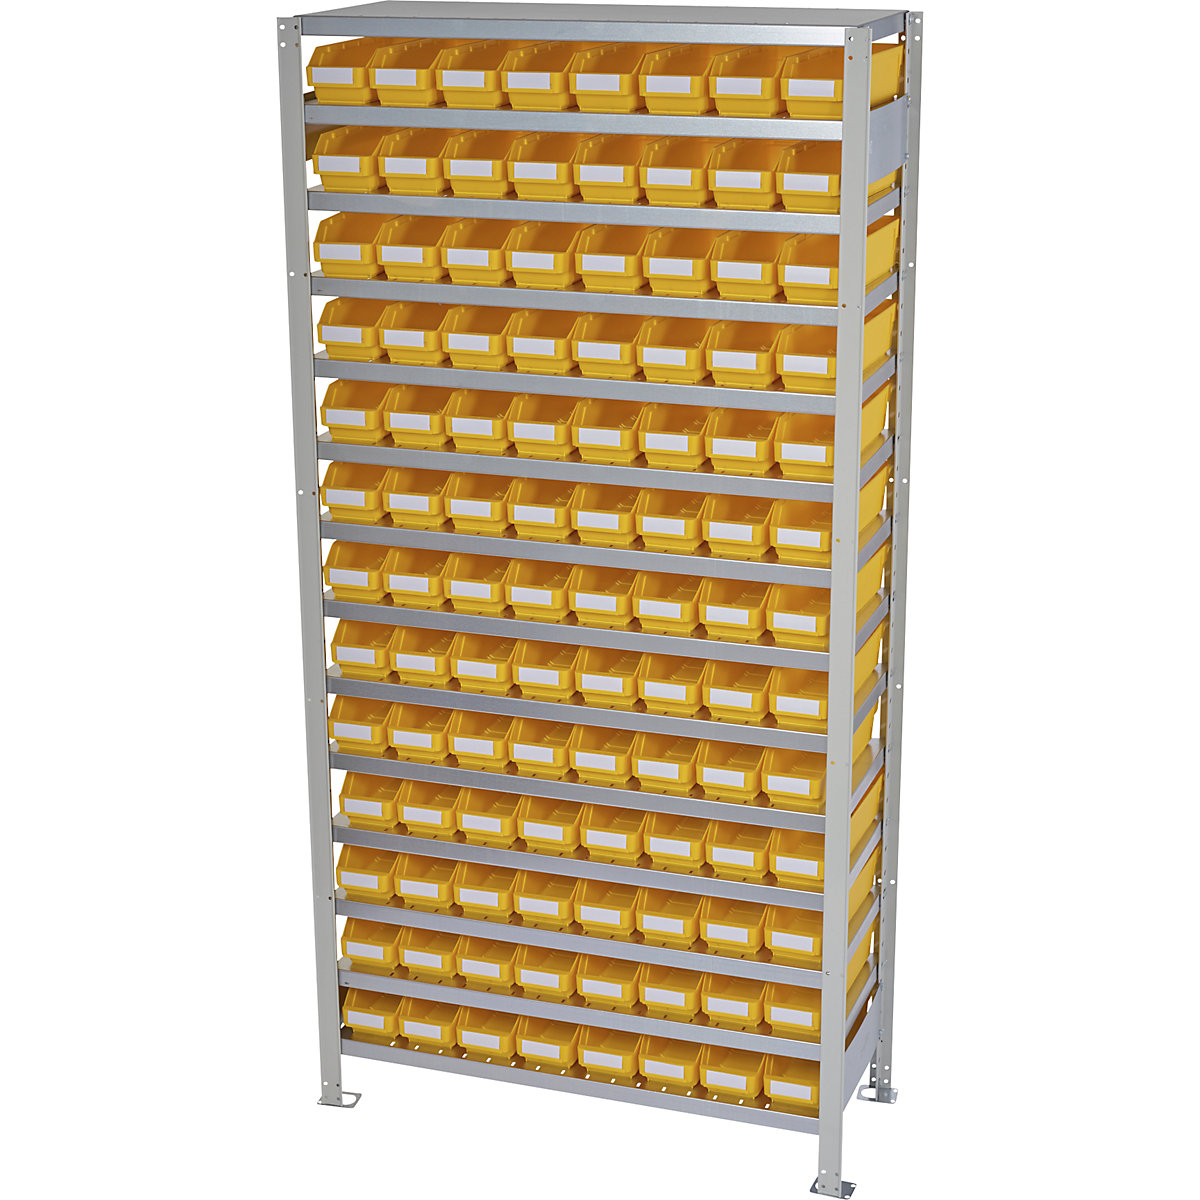 Összedugaszolós állvány dobozokkal – STEMO, állványmagasság 2100 mm, alapállvány, 300 mm mély, 104 sárga doboz-31